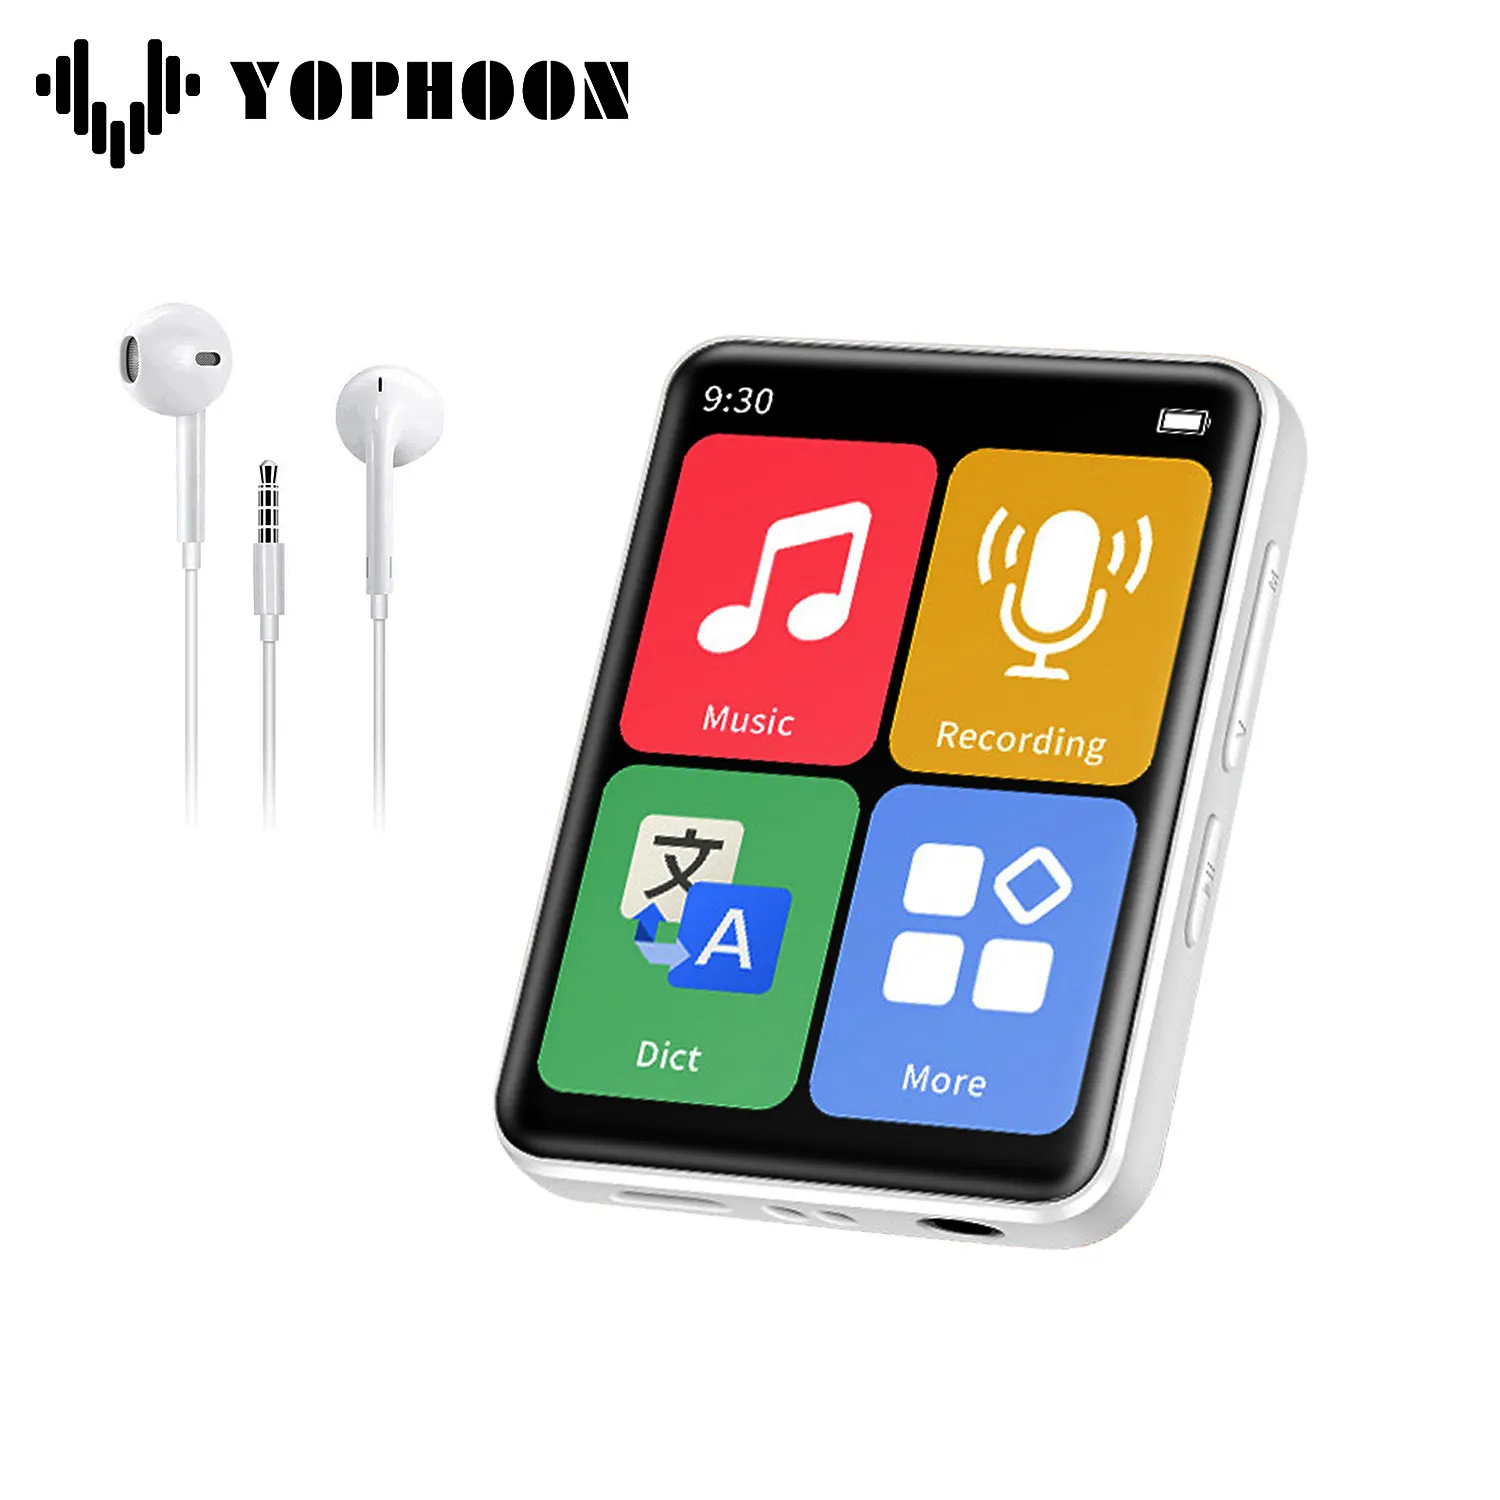 Mini taşınabilir MP3 çalar, Yophoon D2 Walkman dokunmatik ekran mavi diş küçük müzik çalar öğrenci öğrenme